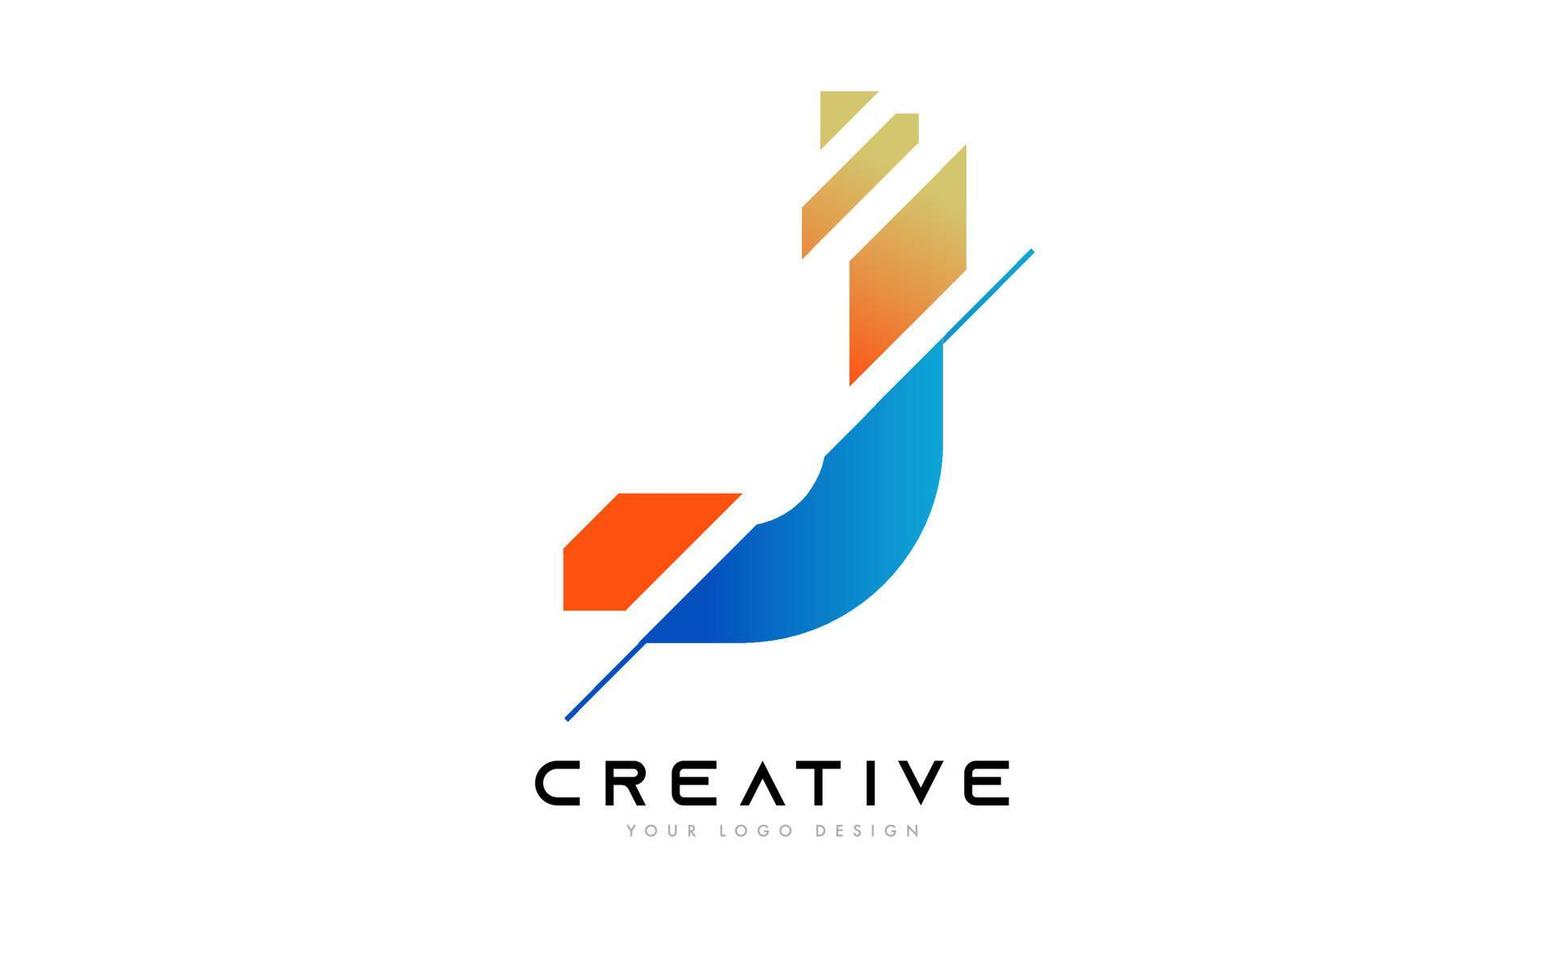 diseño del icono del logotipo de la letra j en rodajas con colores azul y naranja y rodajas cortadas vector